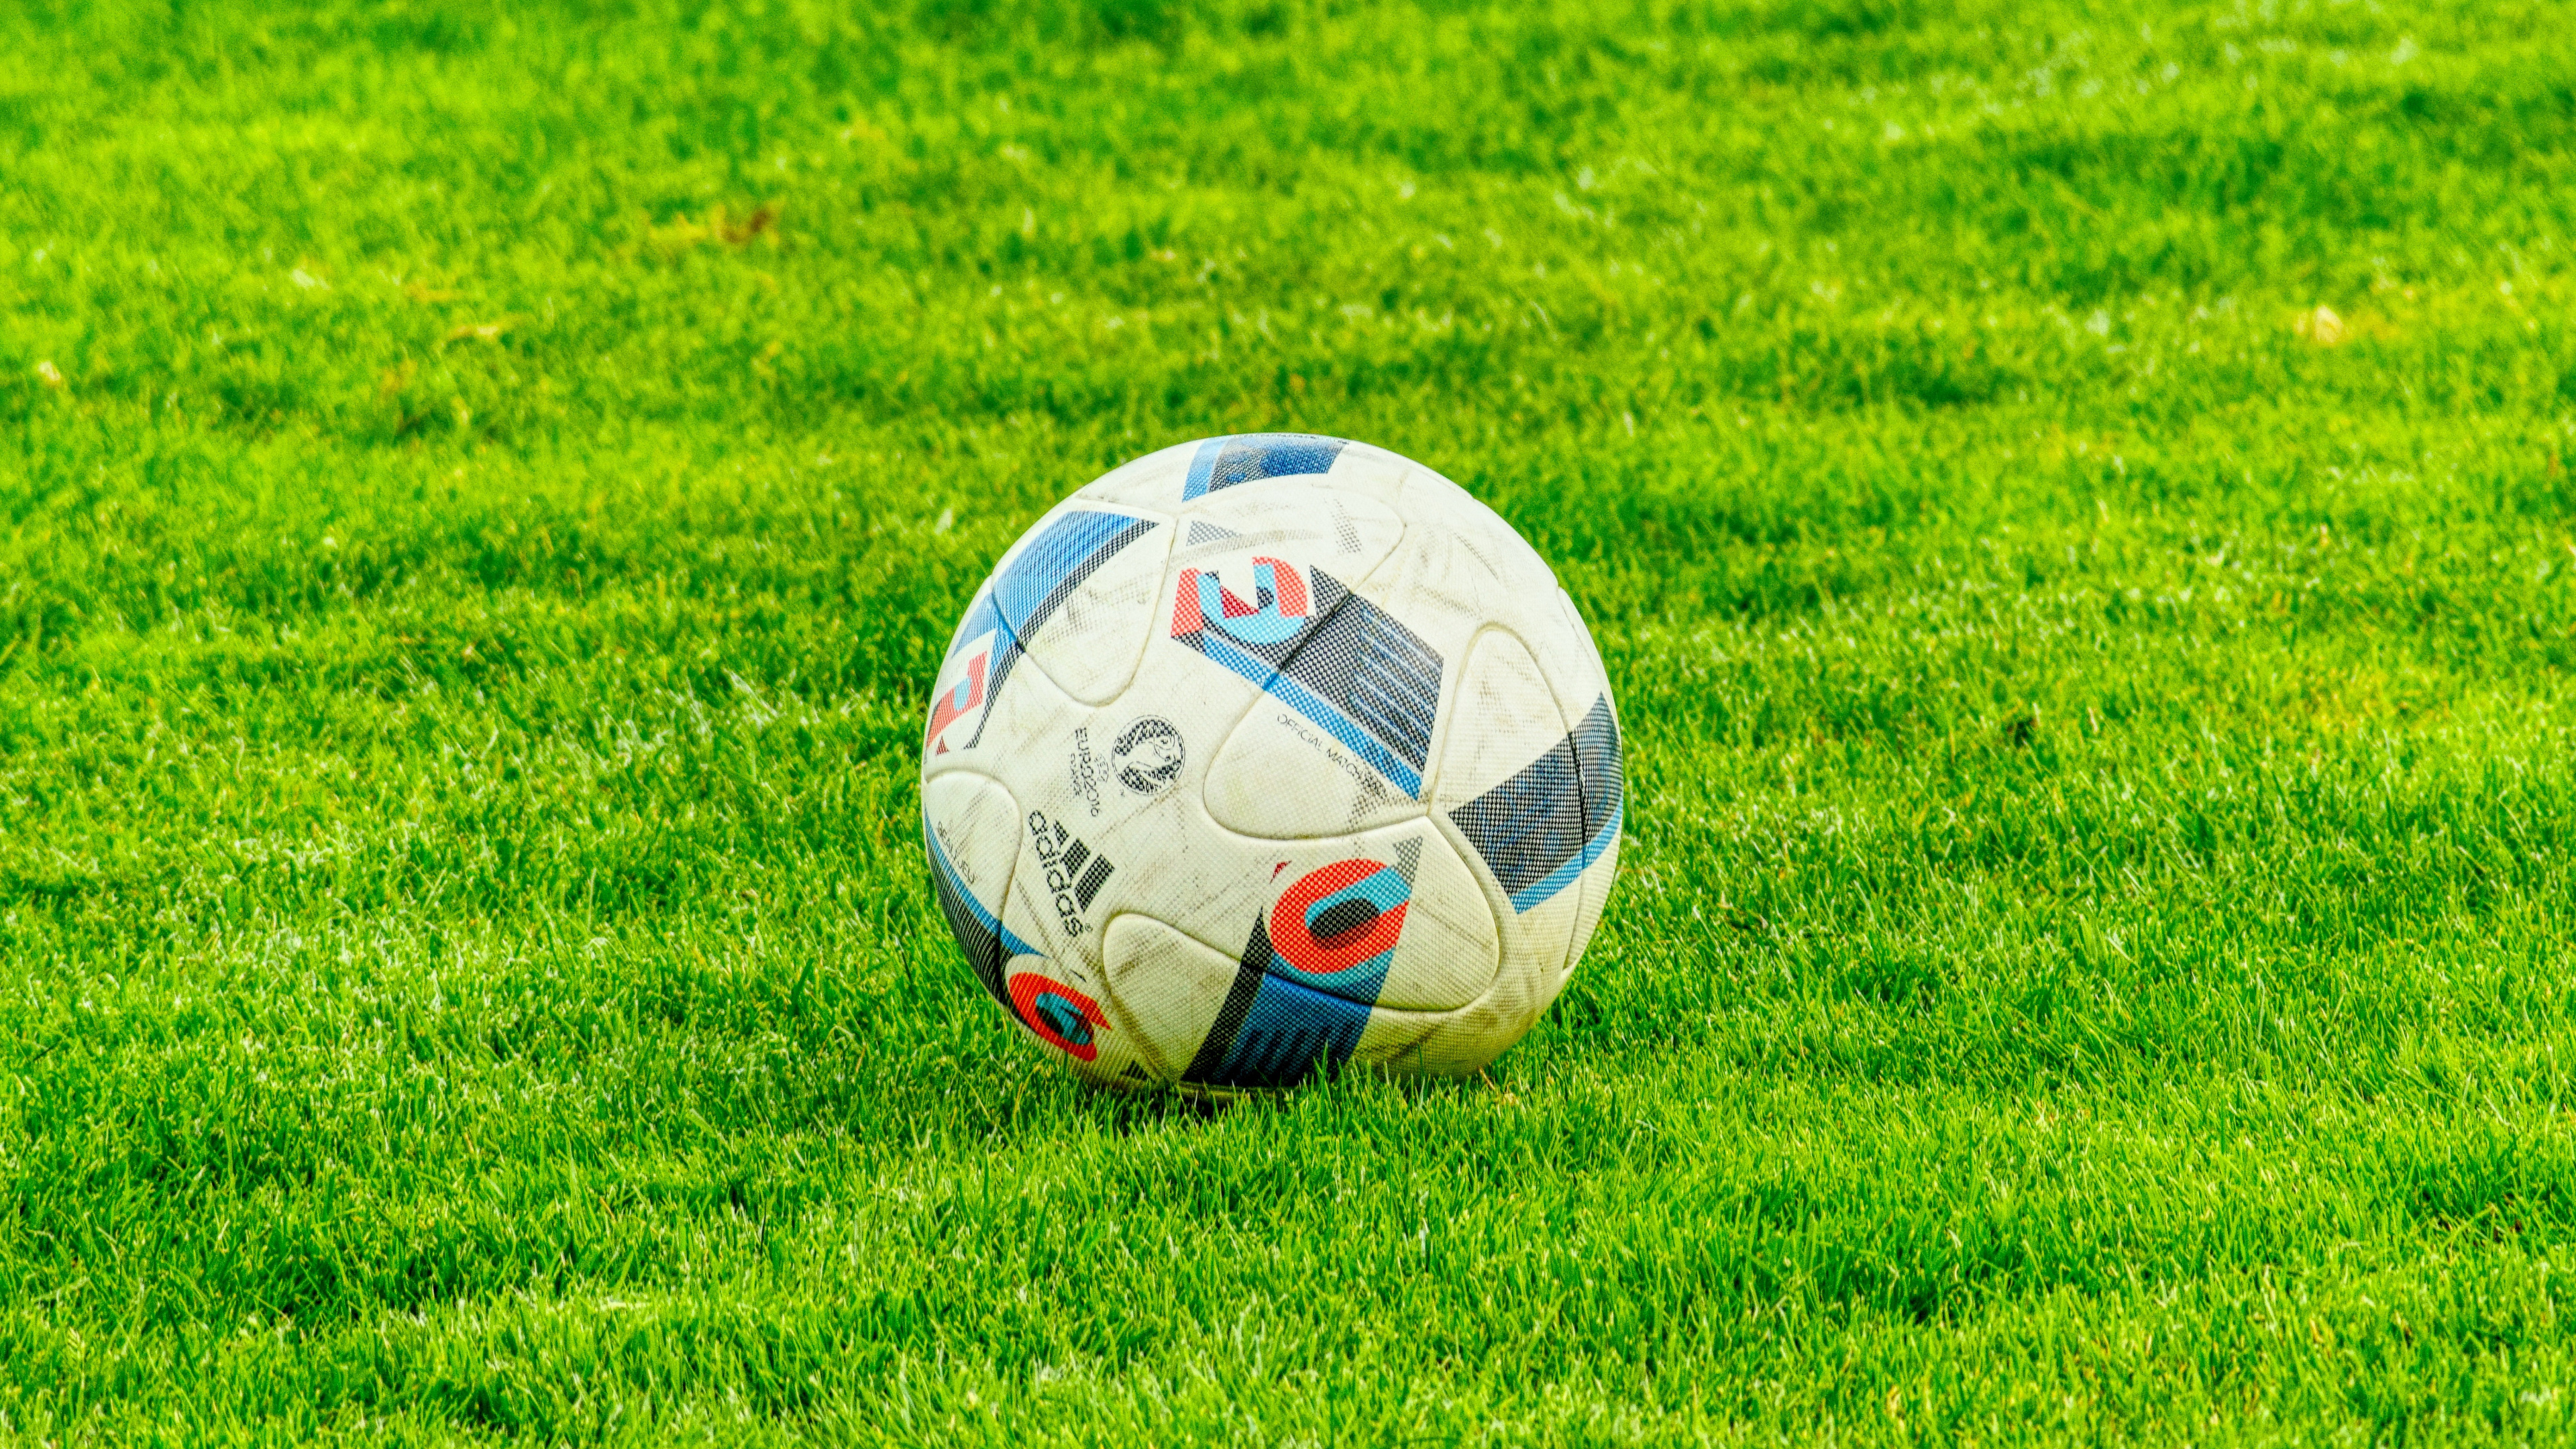 足球, 球, 草, 国际足球的规则, 气球 壁纸 3840x2160 允许